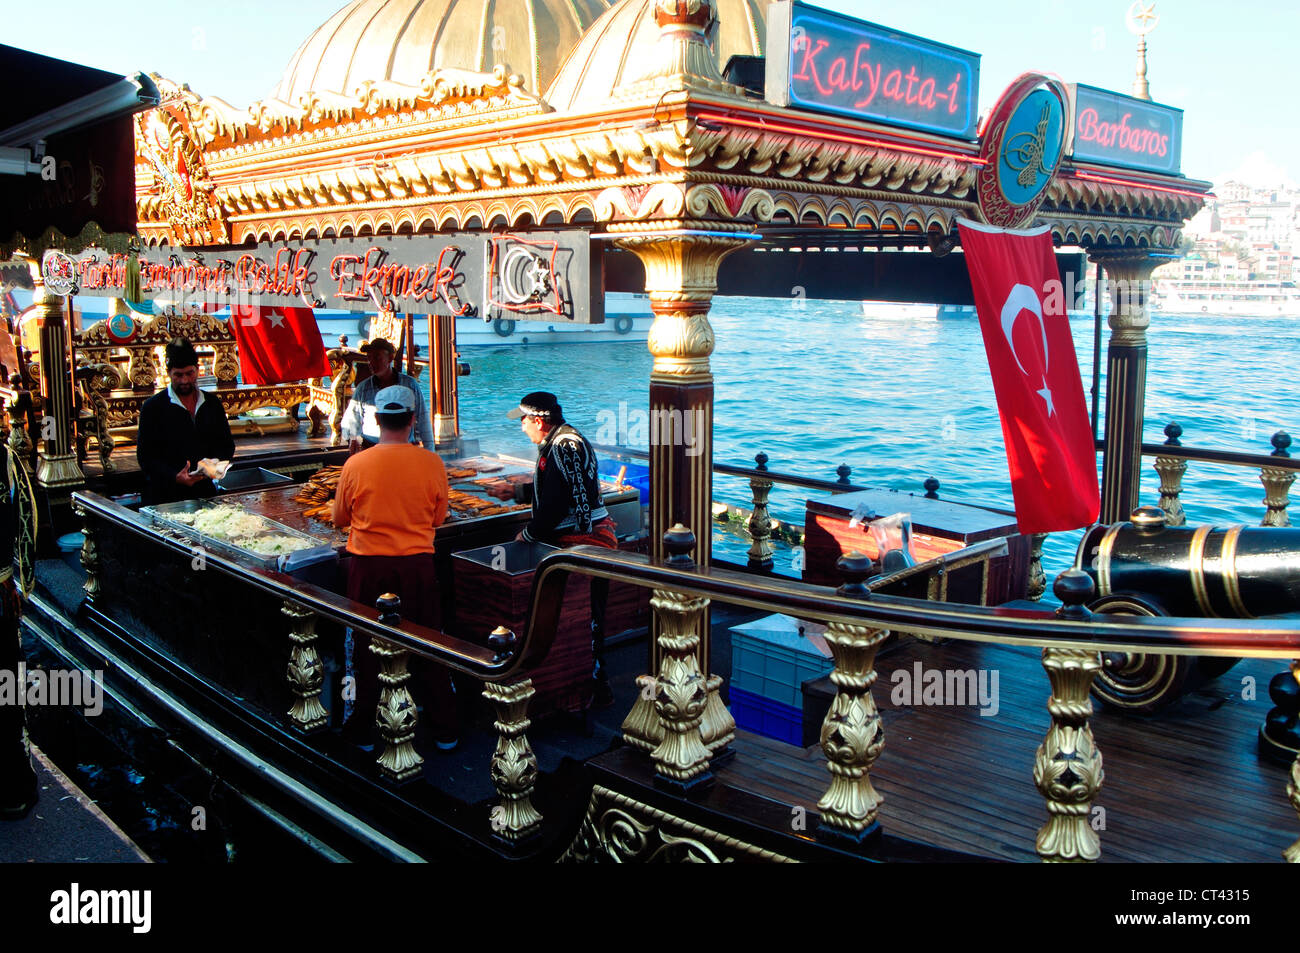 Turchia, Istanbul, Eminoenue, Golden Horn, cena di pesce con pesce panini per la vendita su un riccamente decorata e dorata barca Foto Stock